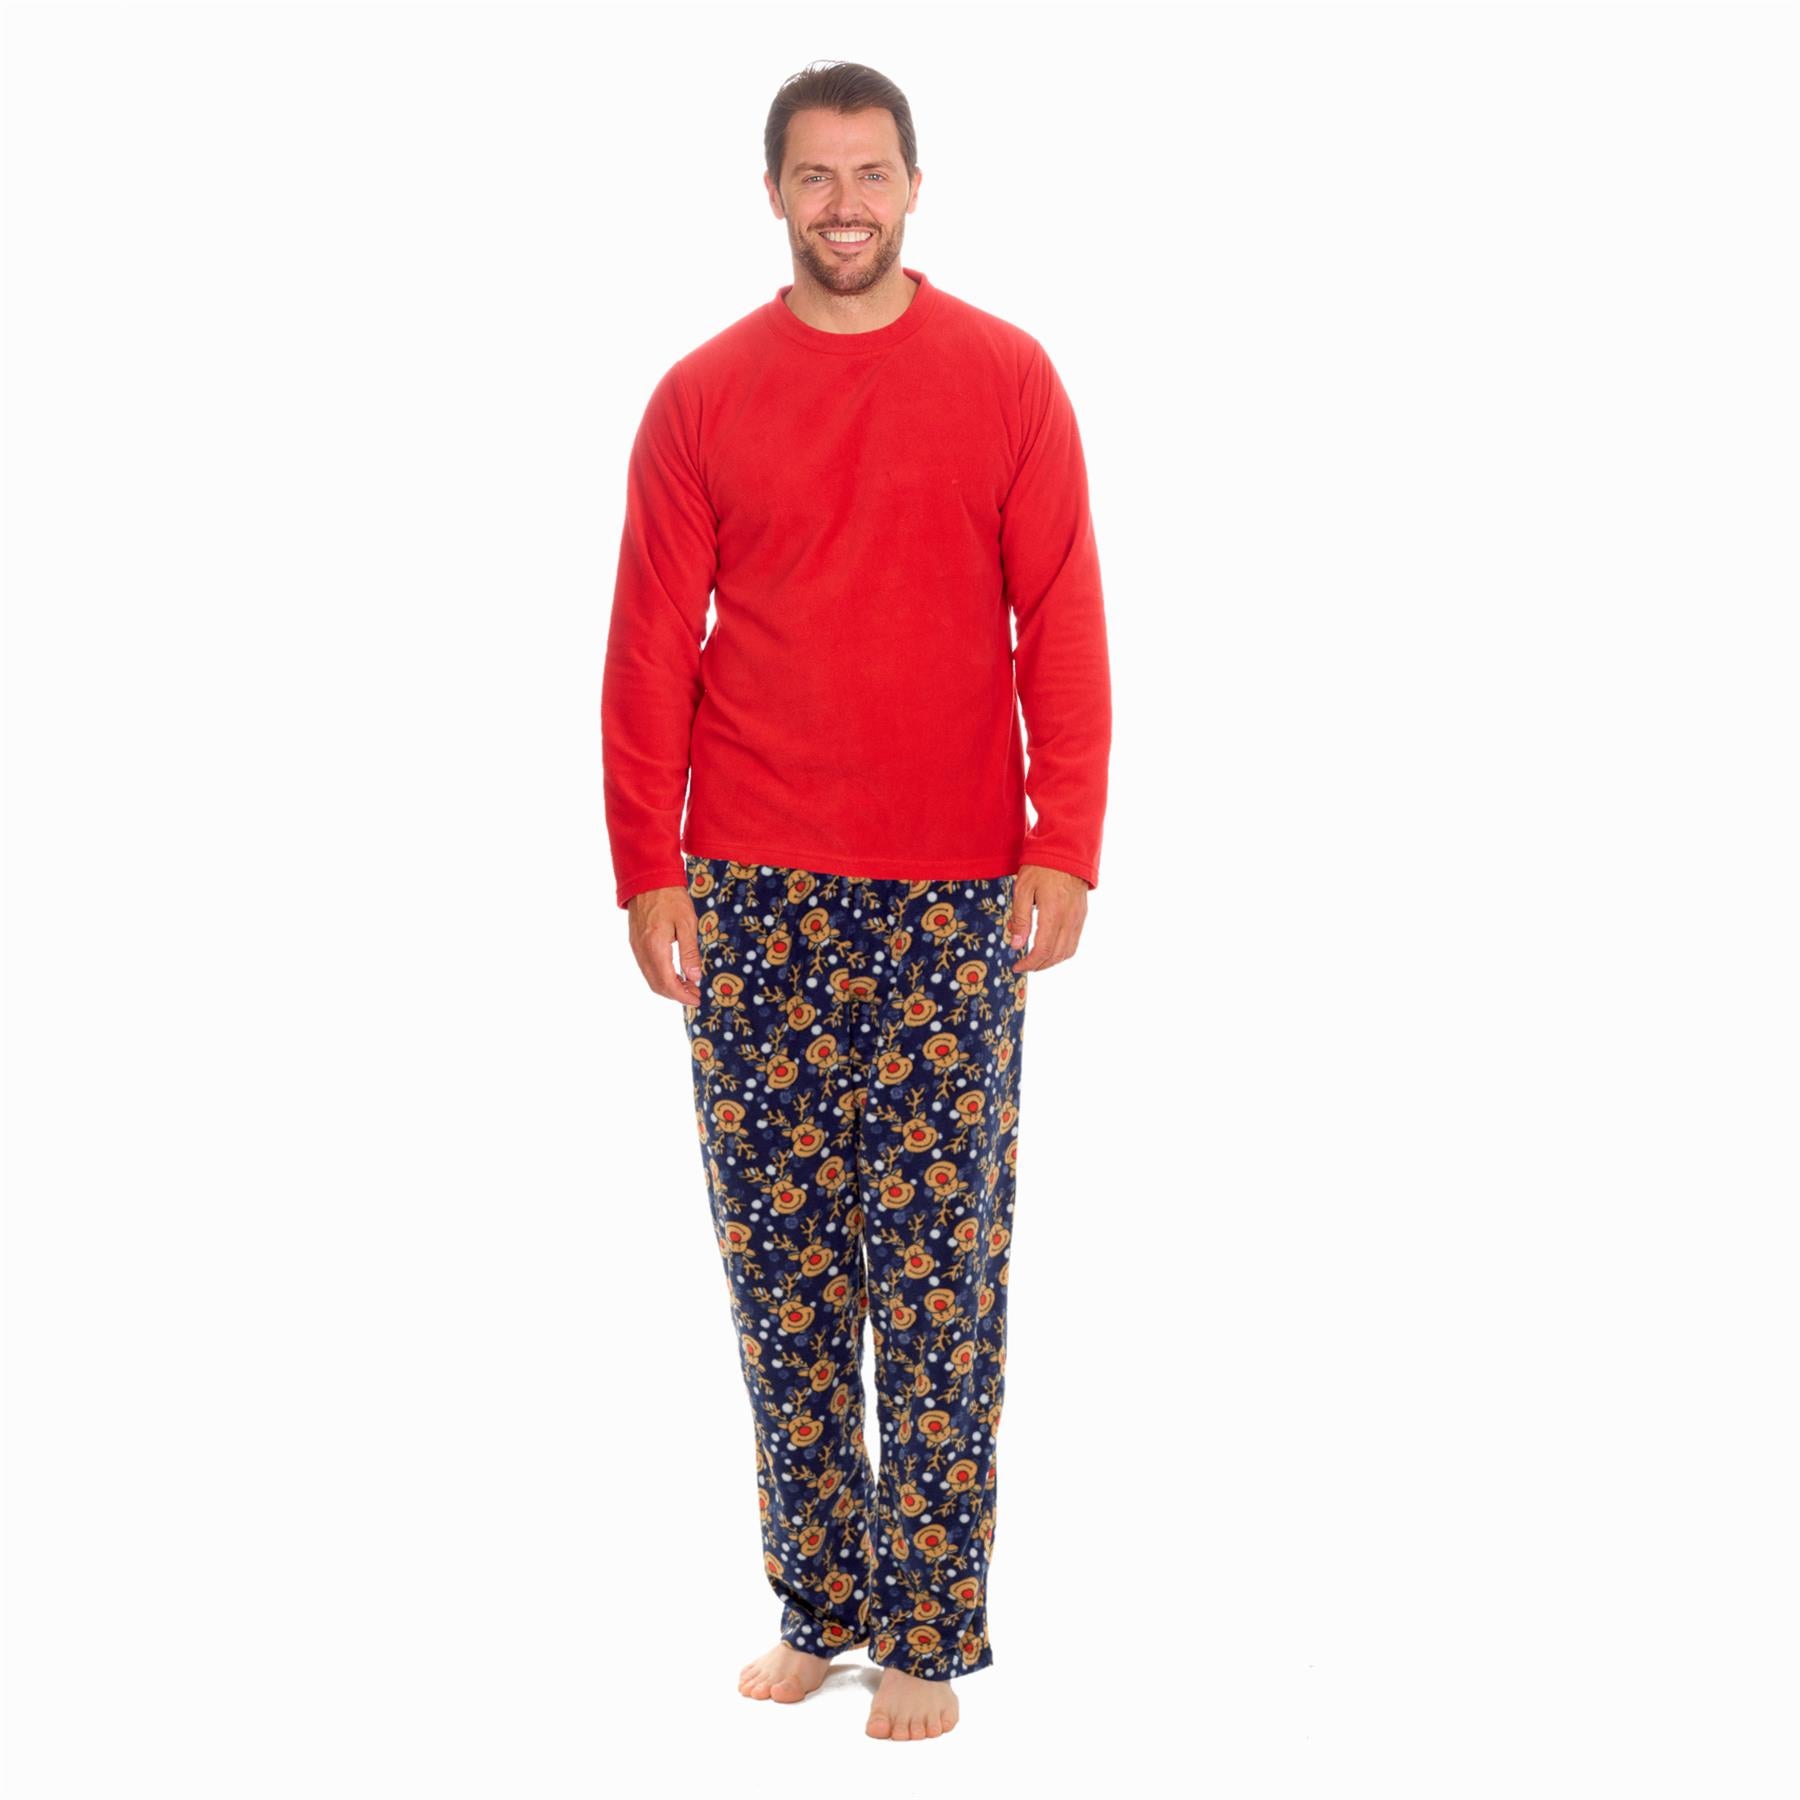 Navy - Red Mens Christmas Pyjamas Set